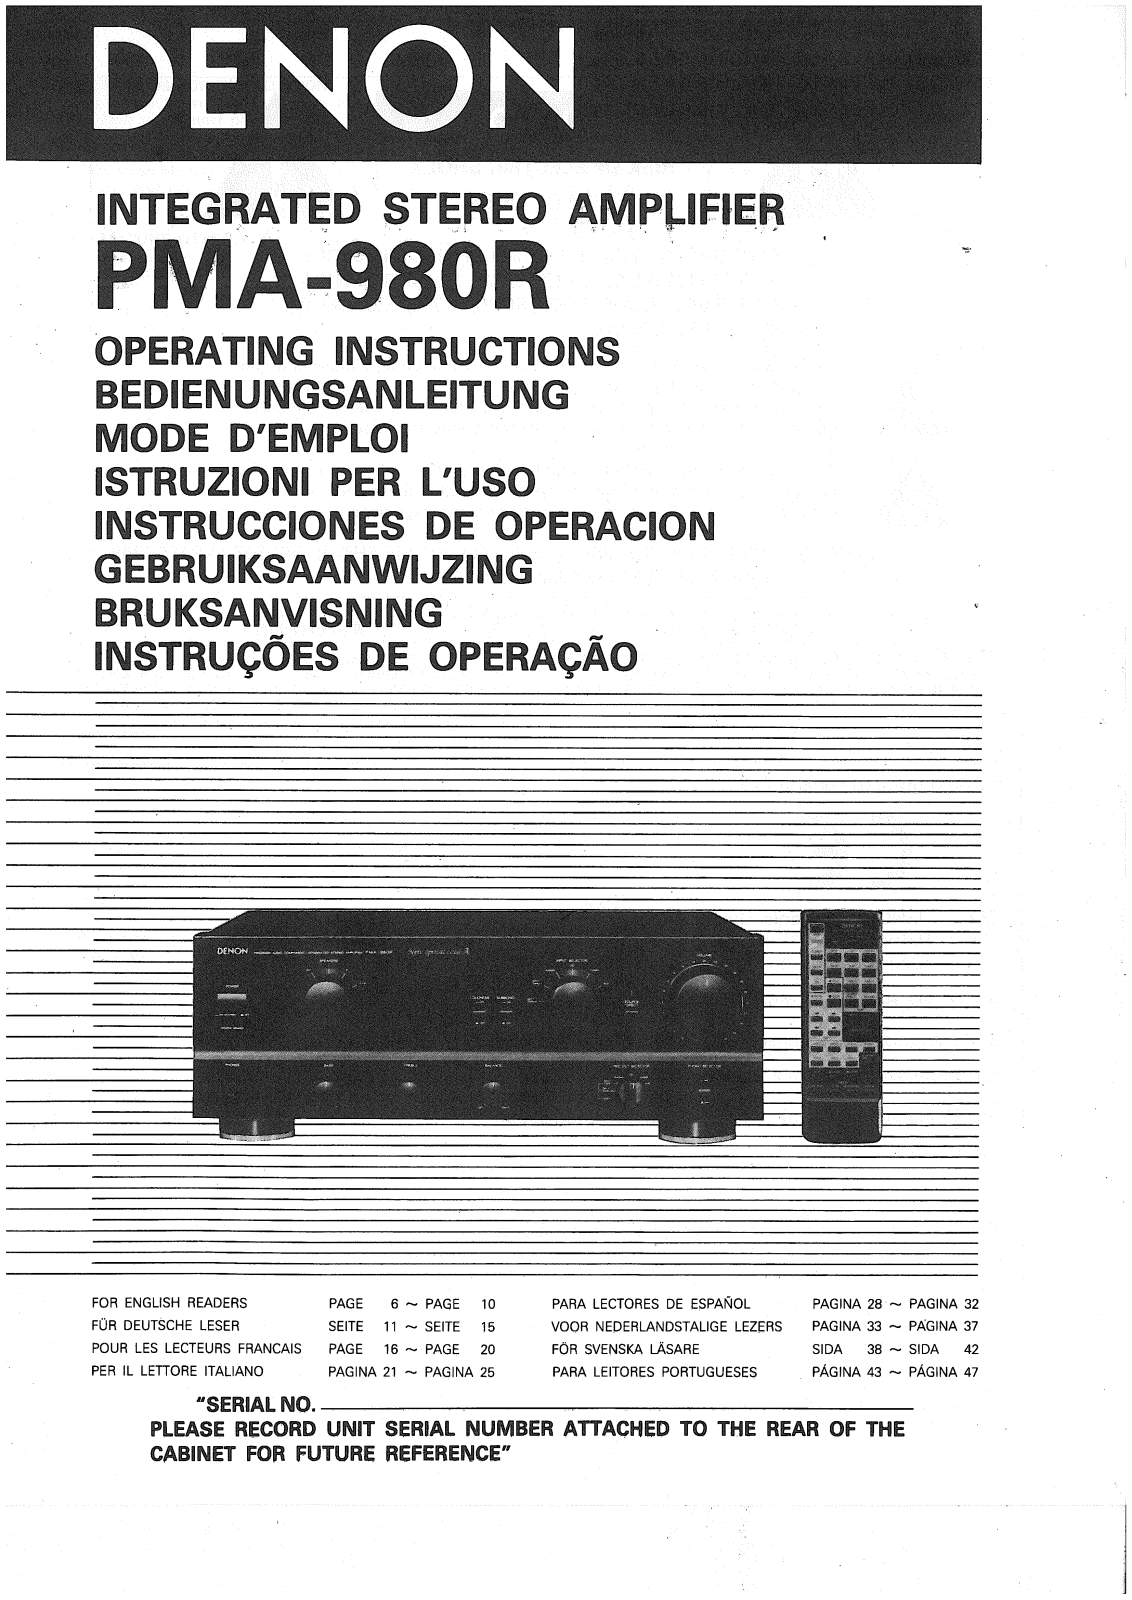 Denon PMA-980R Owner's Manual